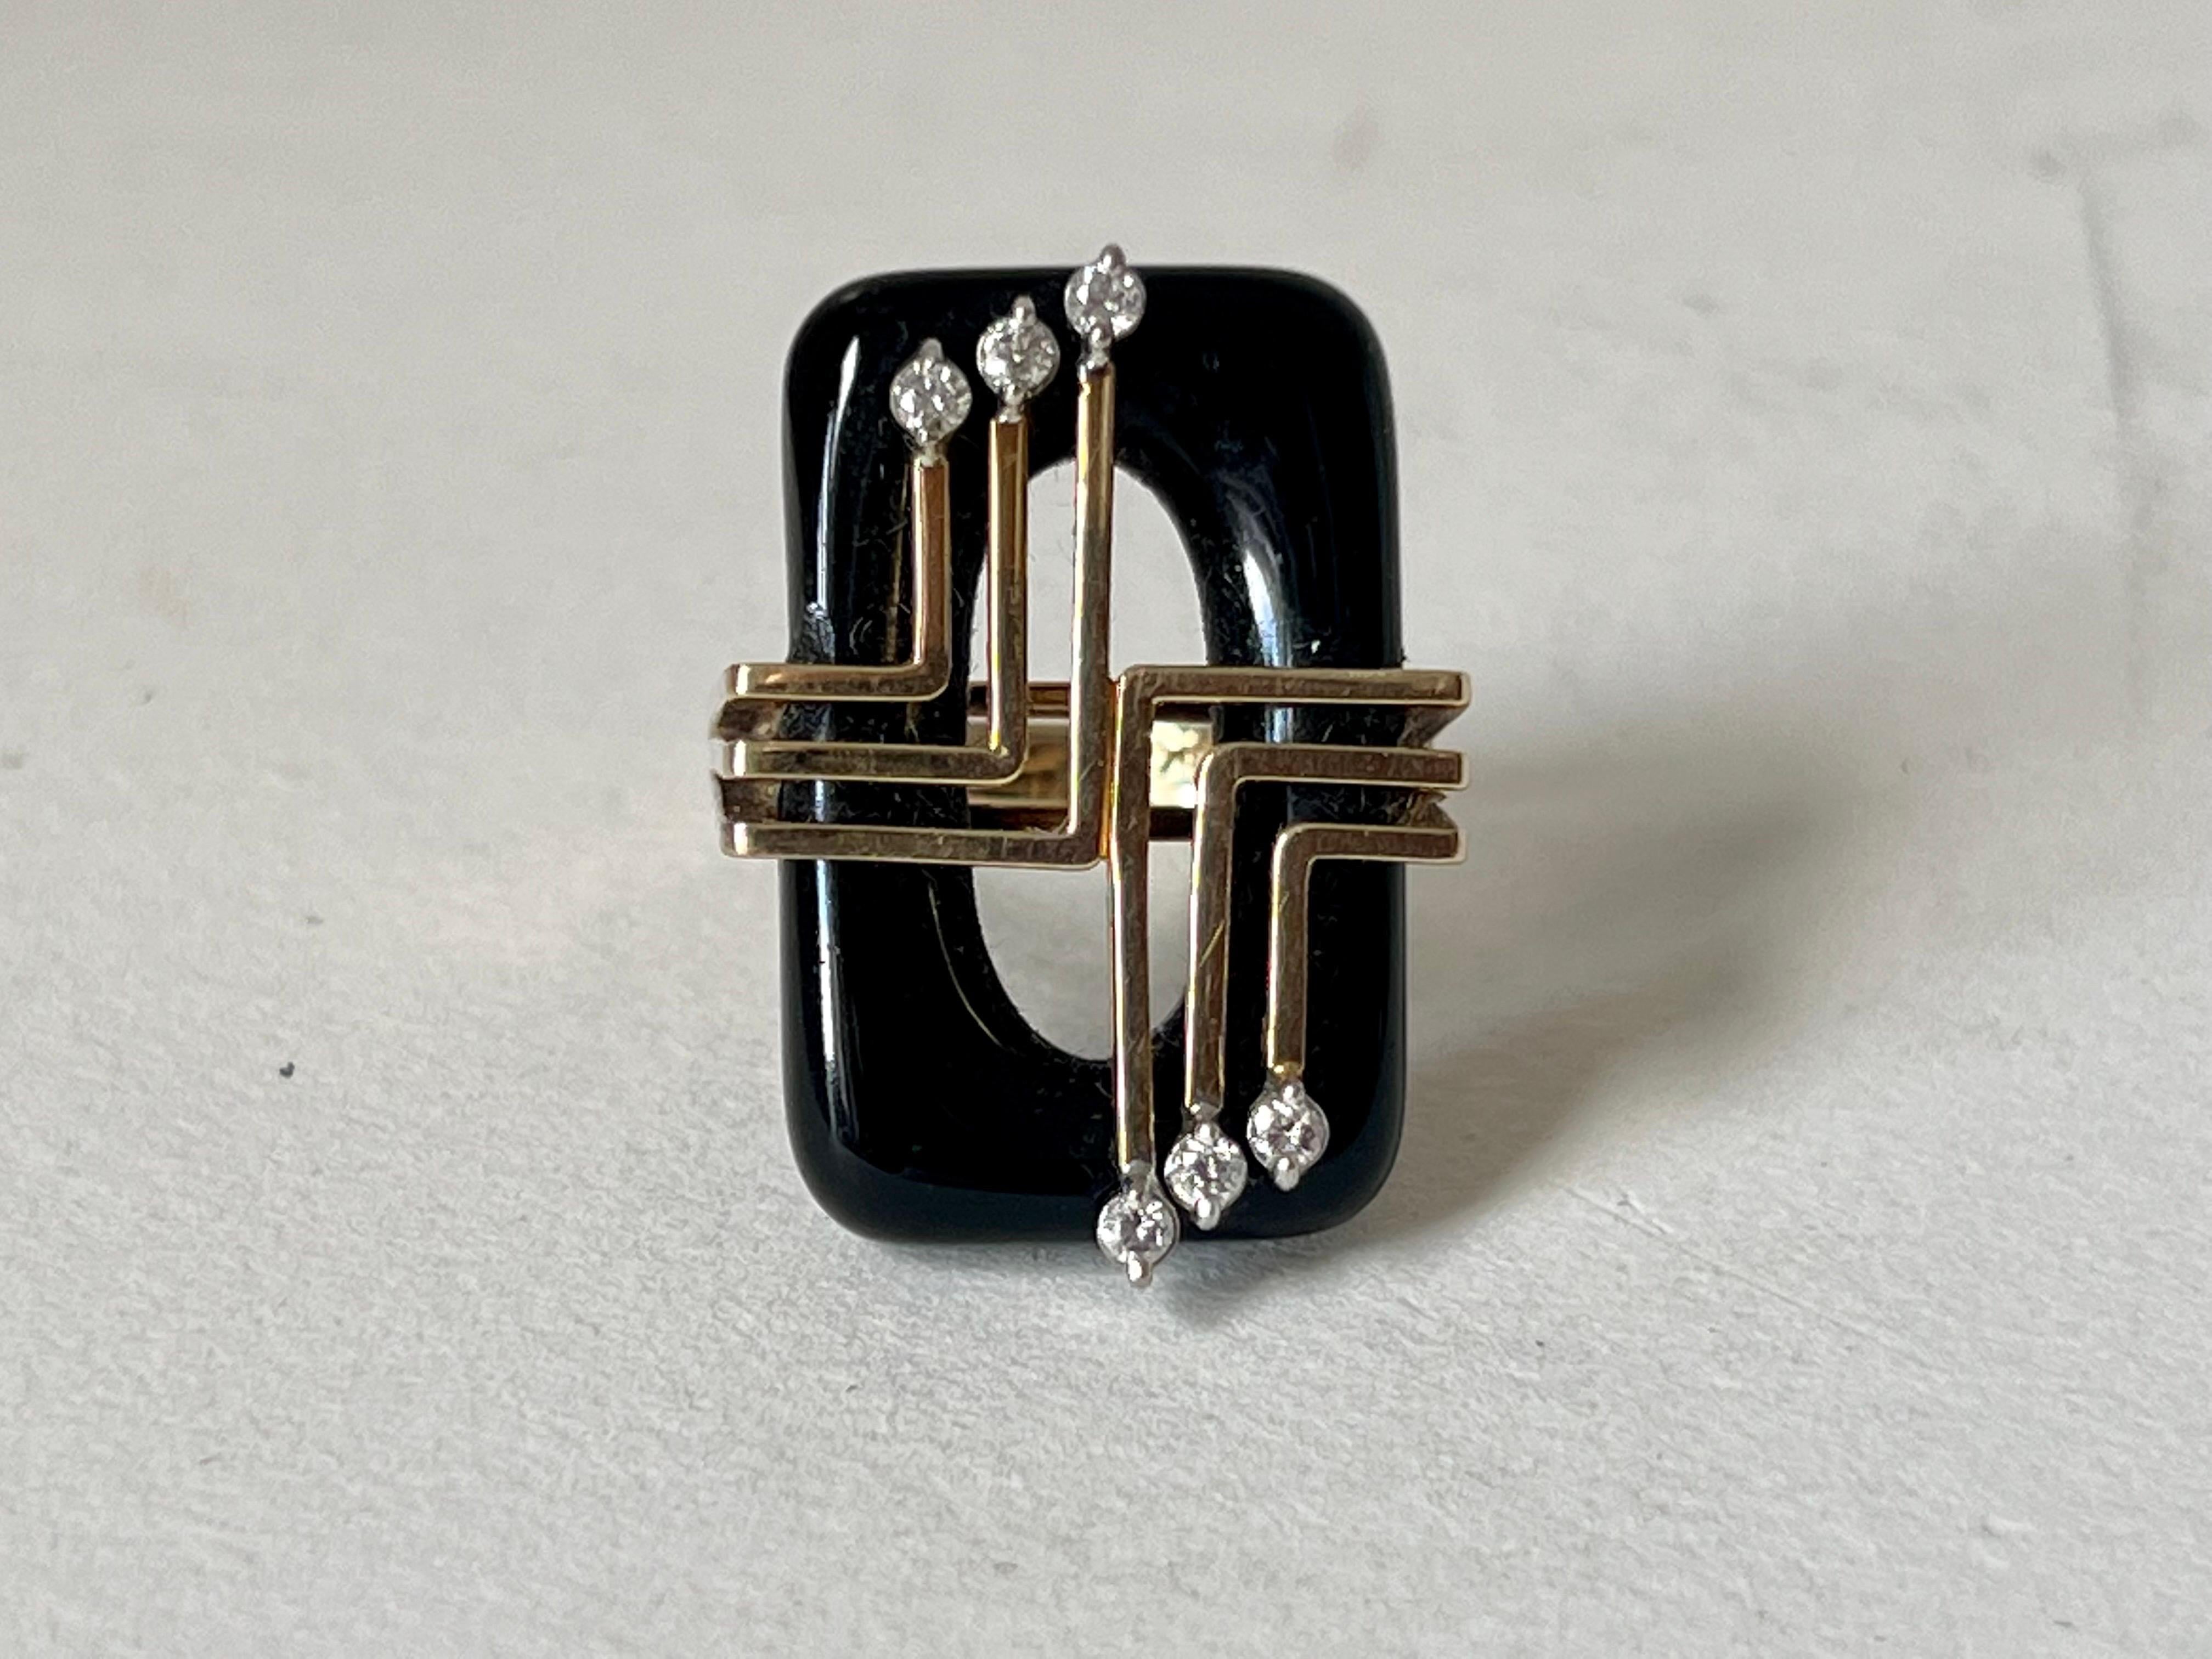 1970er Jahre Art Deco inspiriert Onyx und Diamant-Ring in 14K Goldfassung.
Sehr geringe Abnutzung durch Alter und Gebrauch.